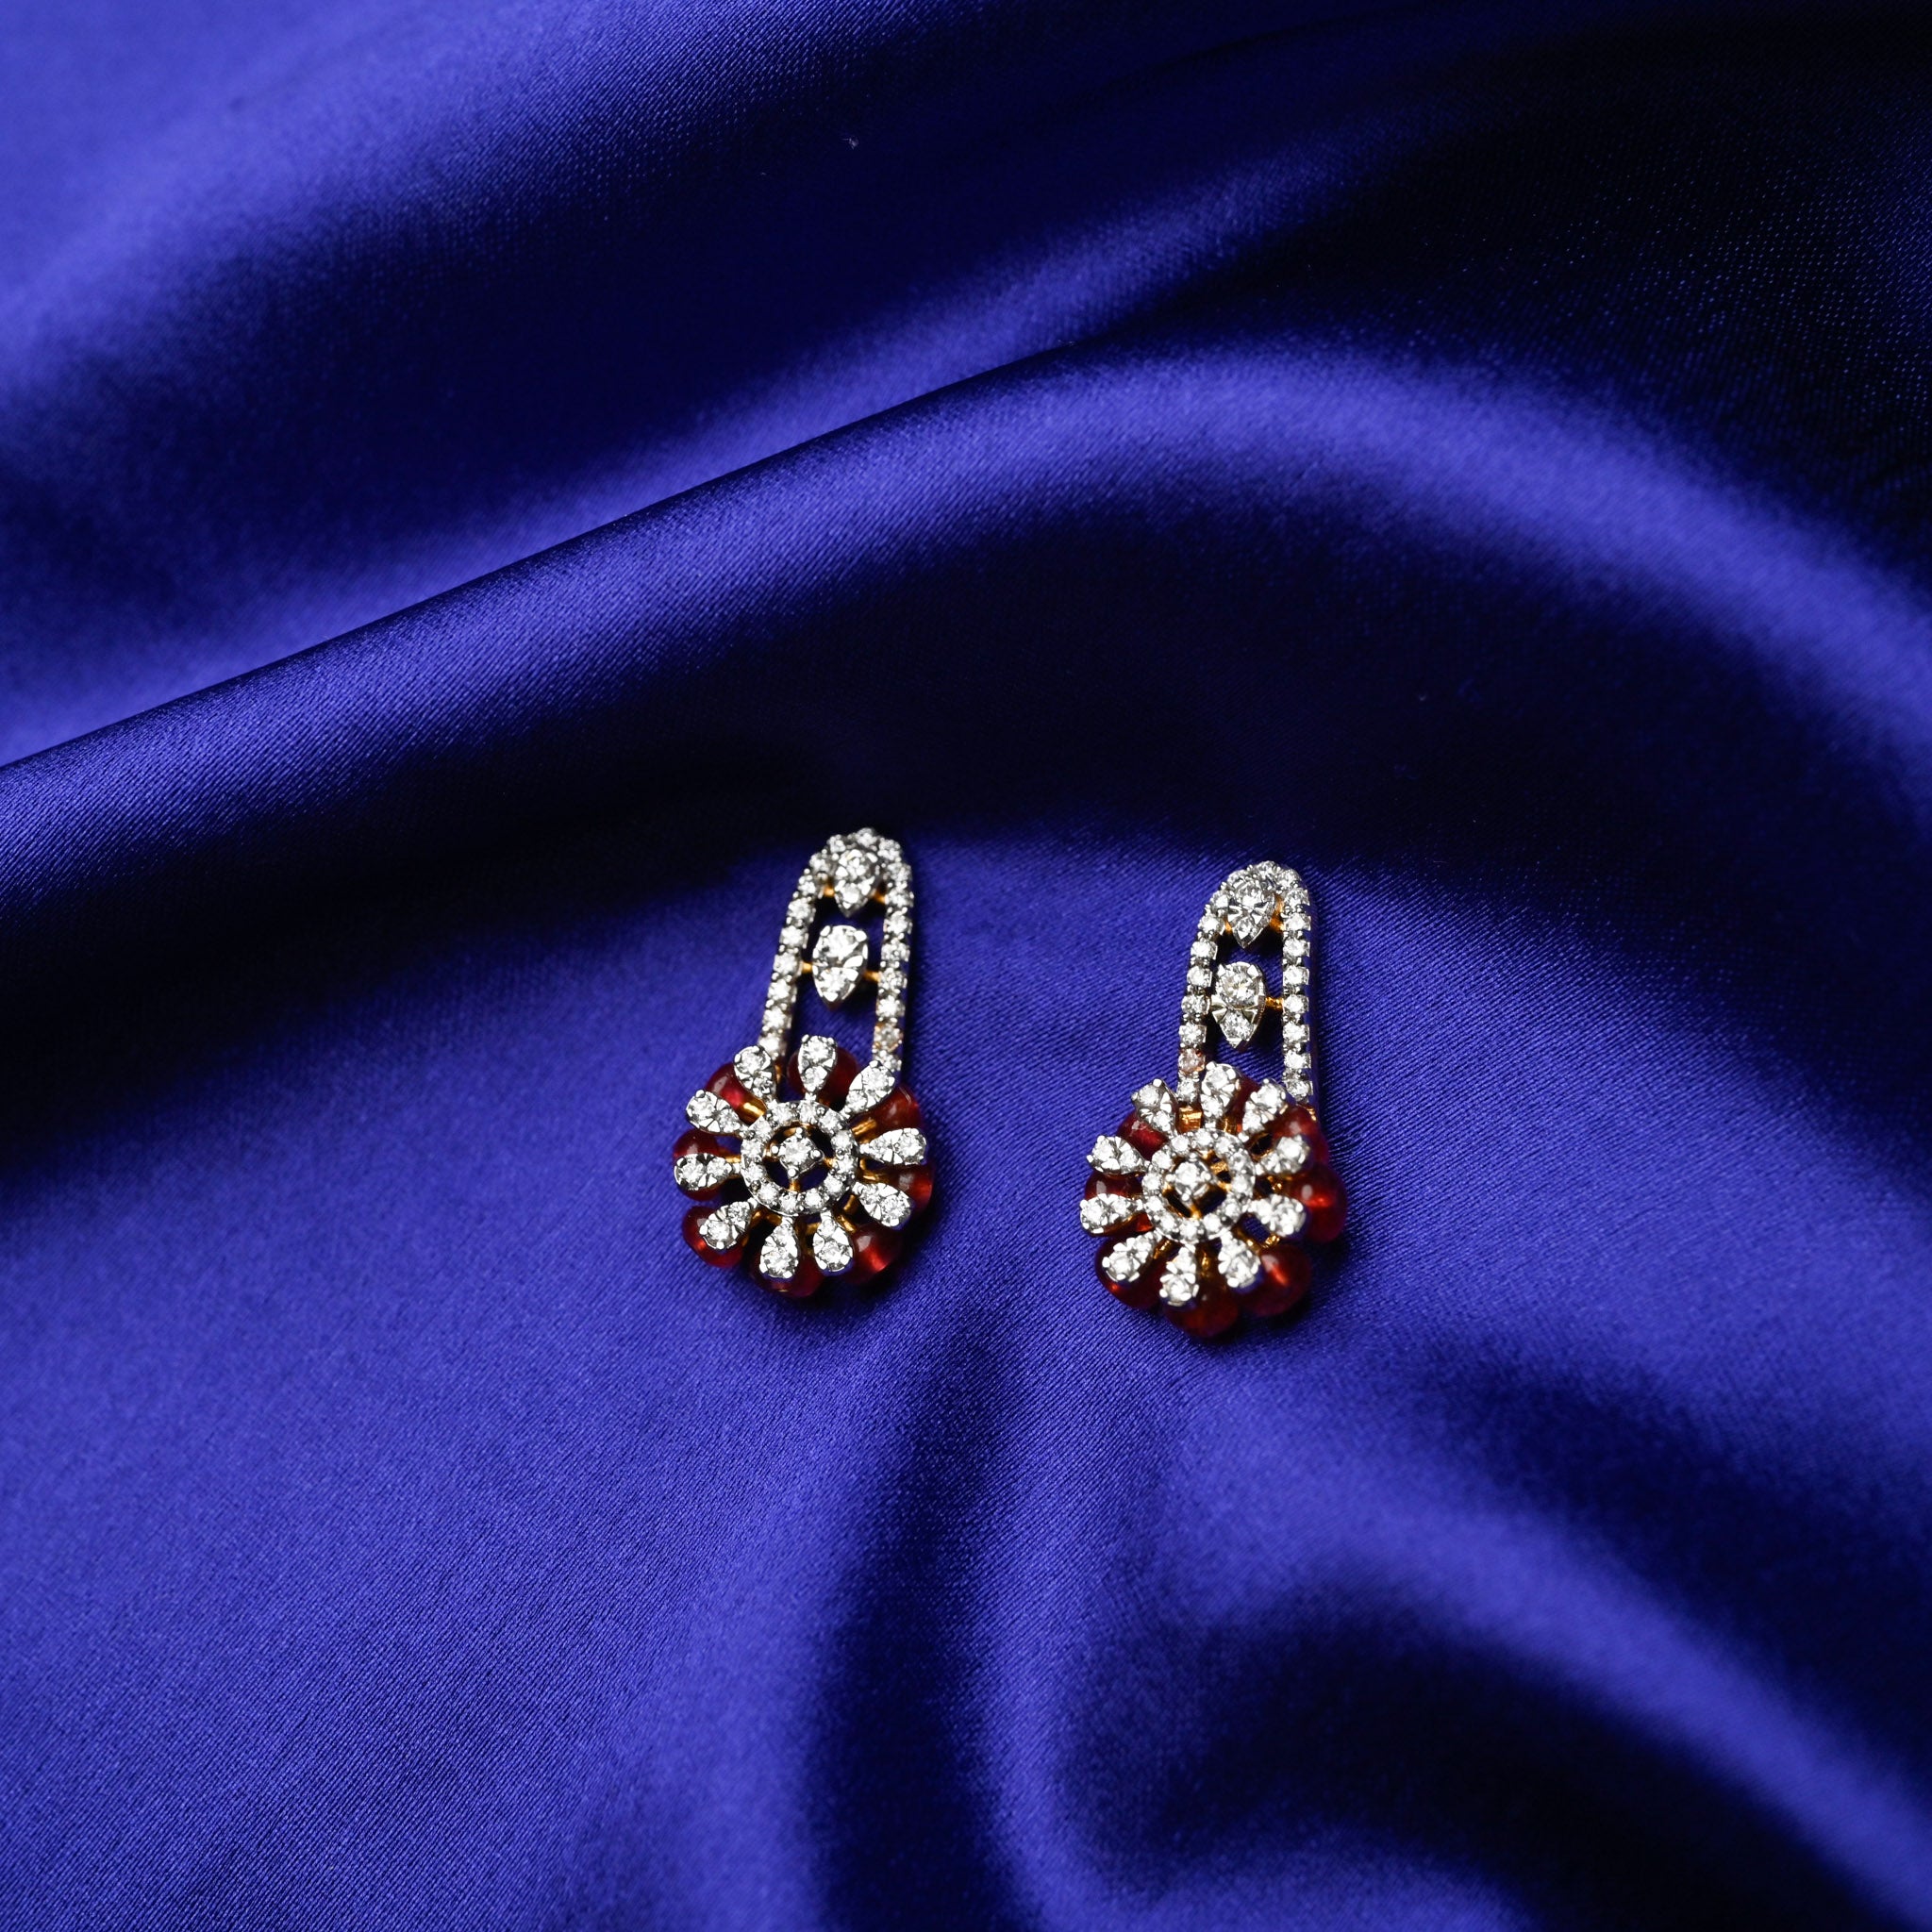 Ruby Love - Earrings with Pendants Set